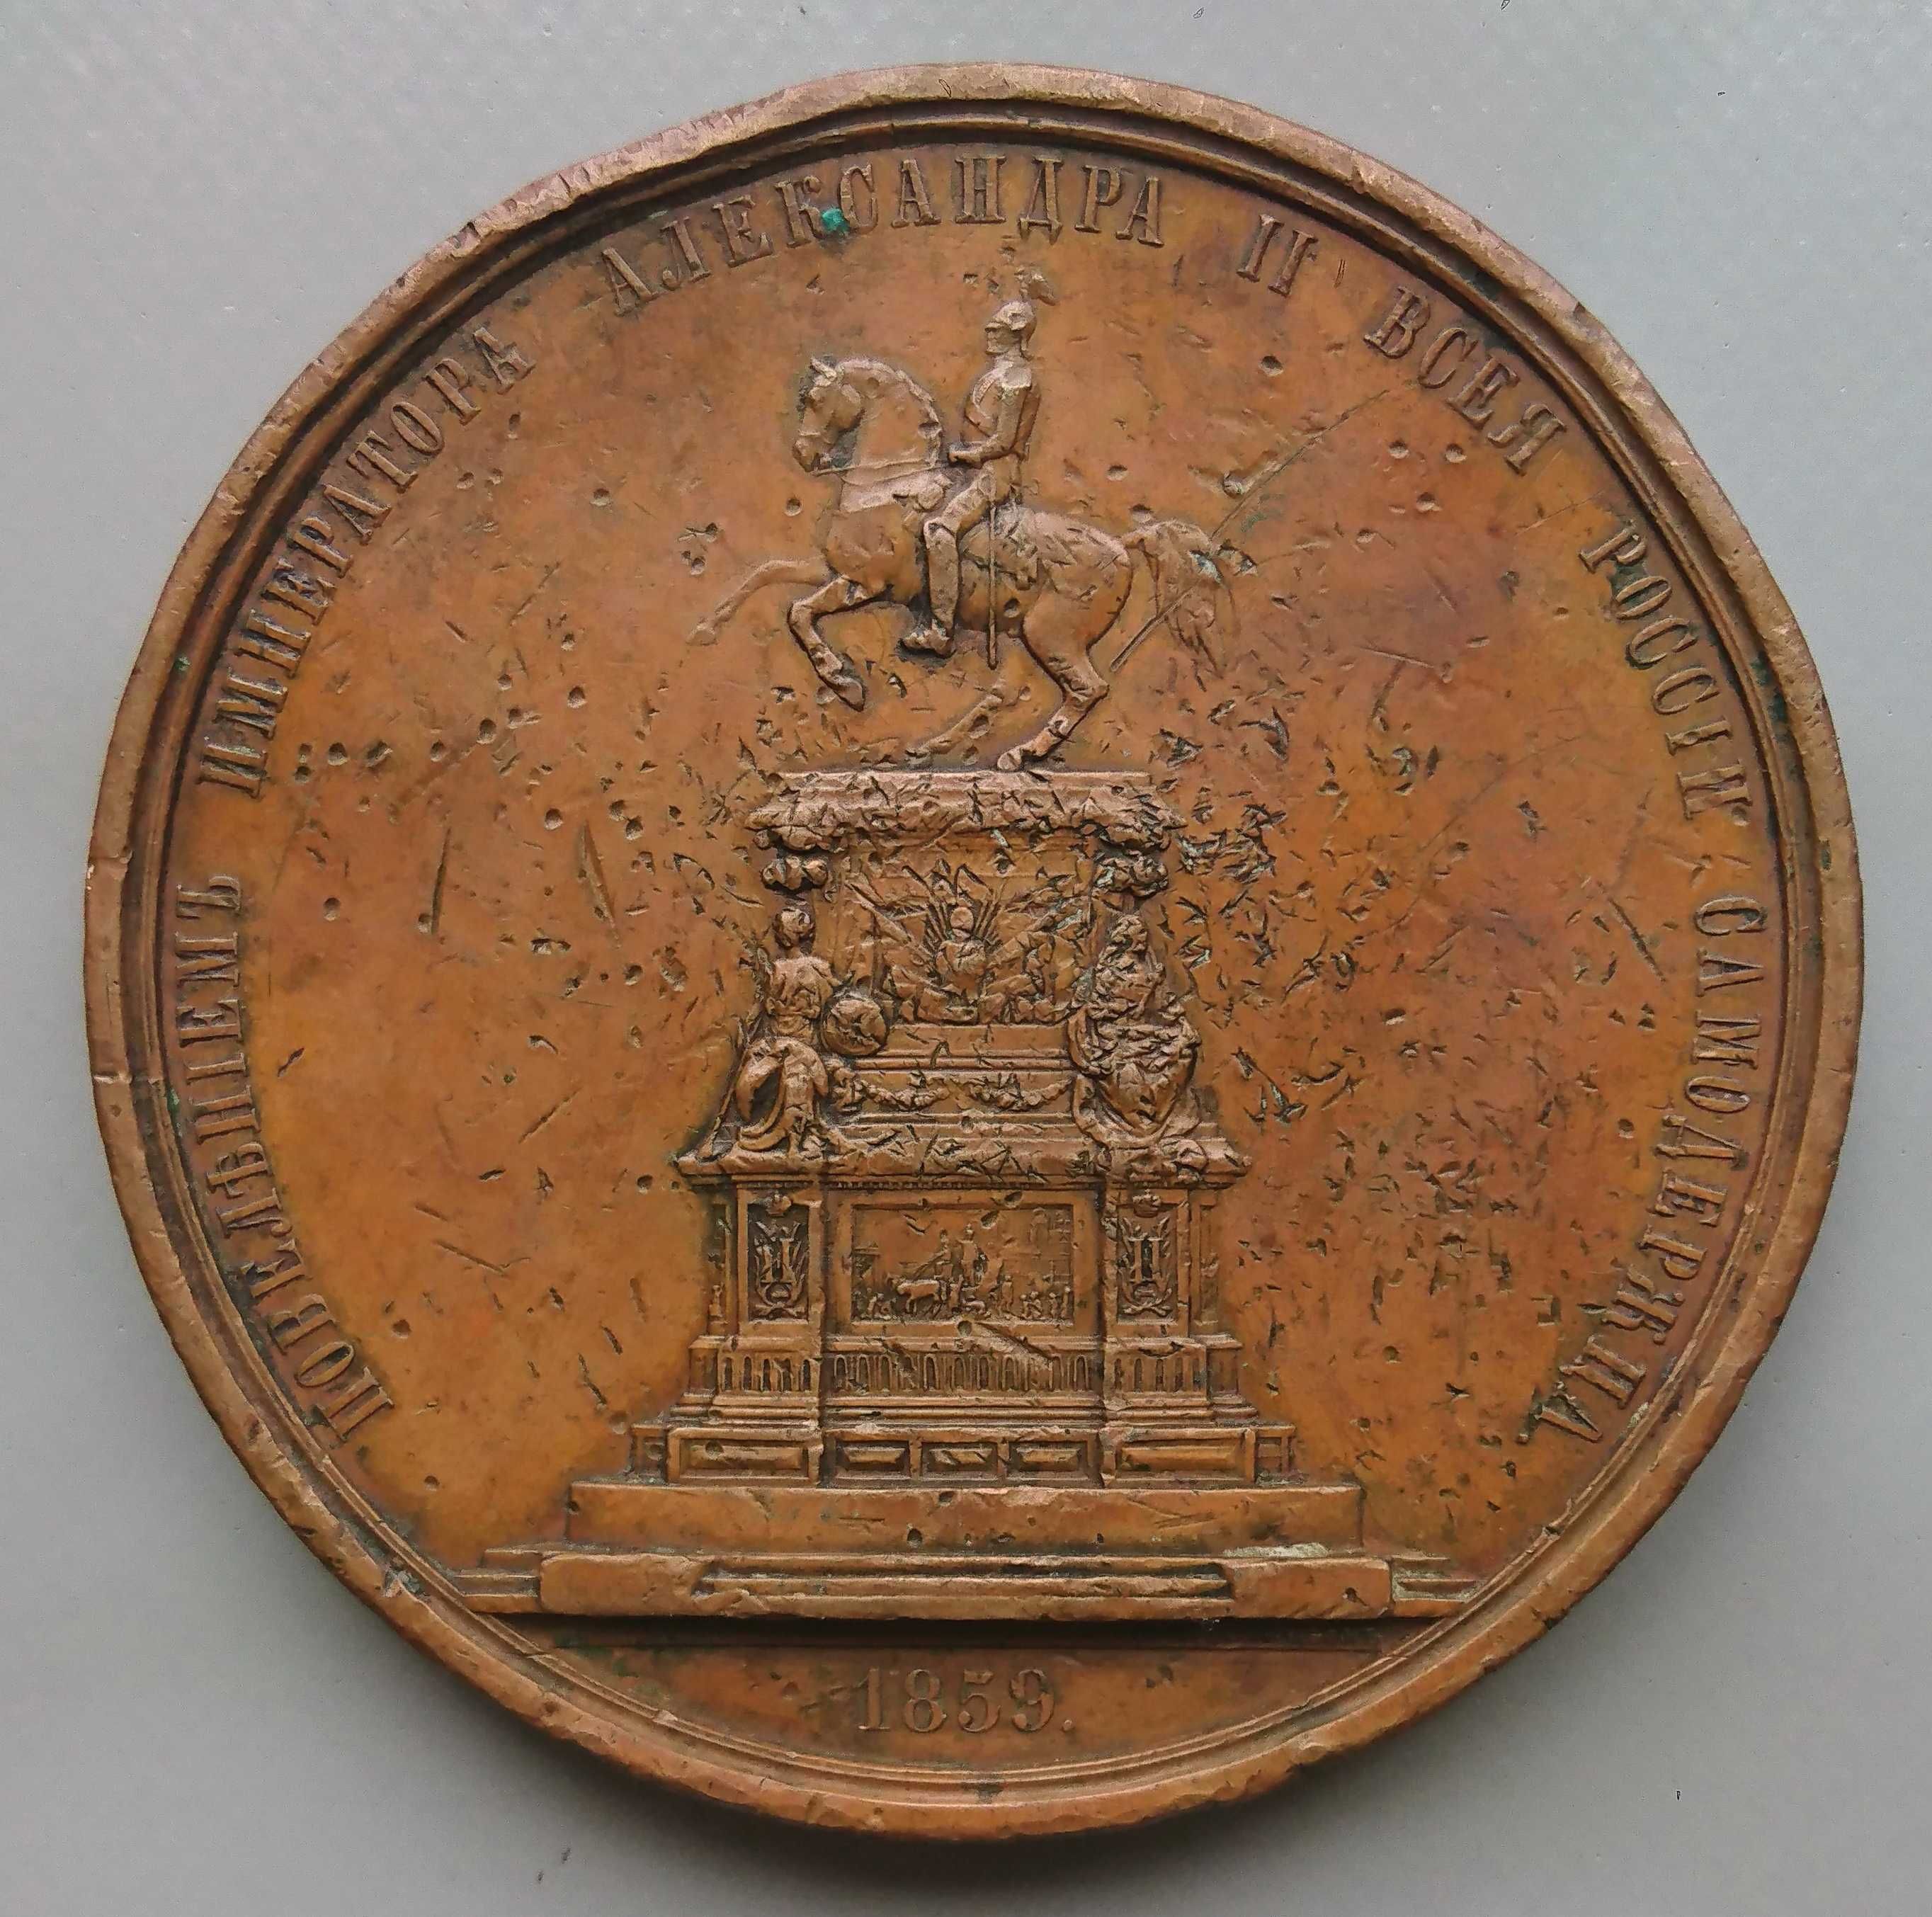 Настольная медаль (В память открытия памятника Николаю I) 1859 год